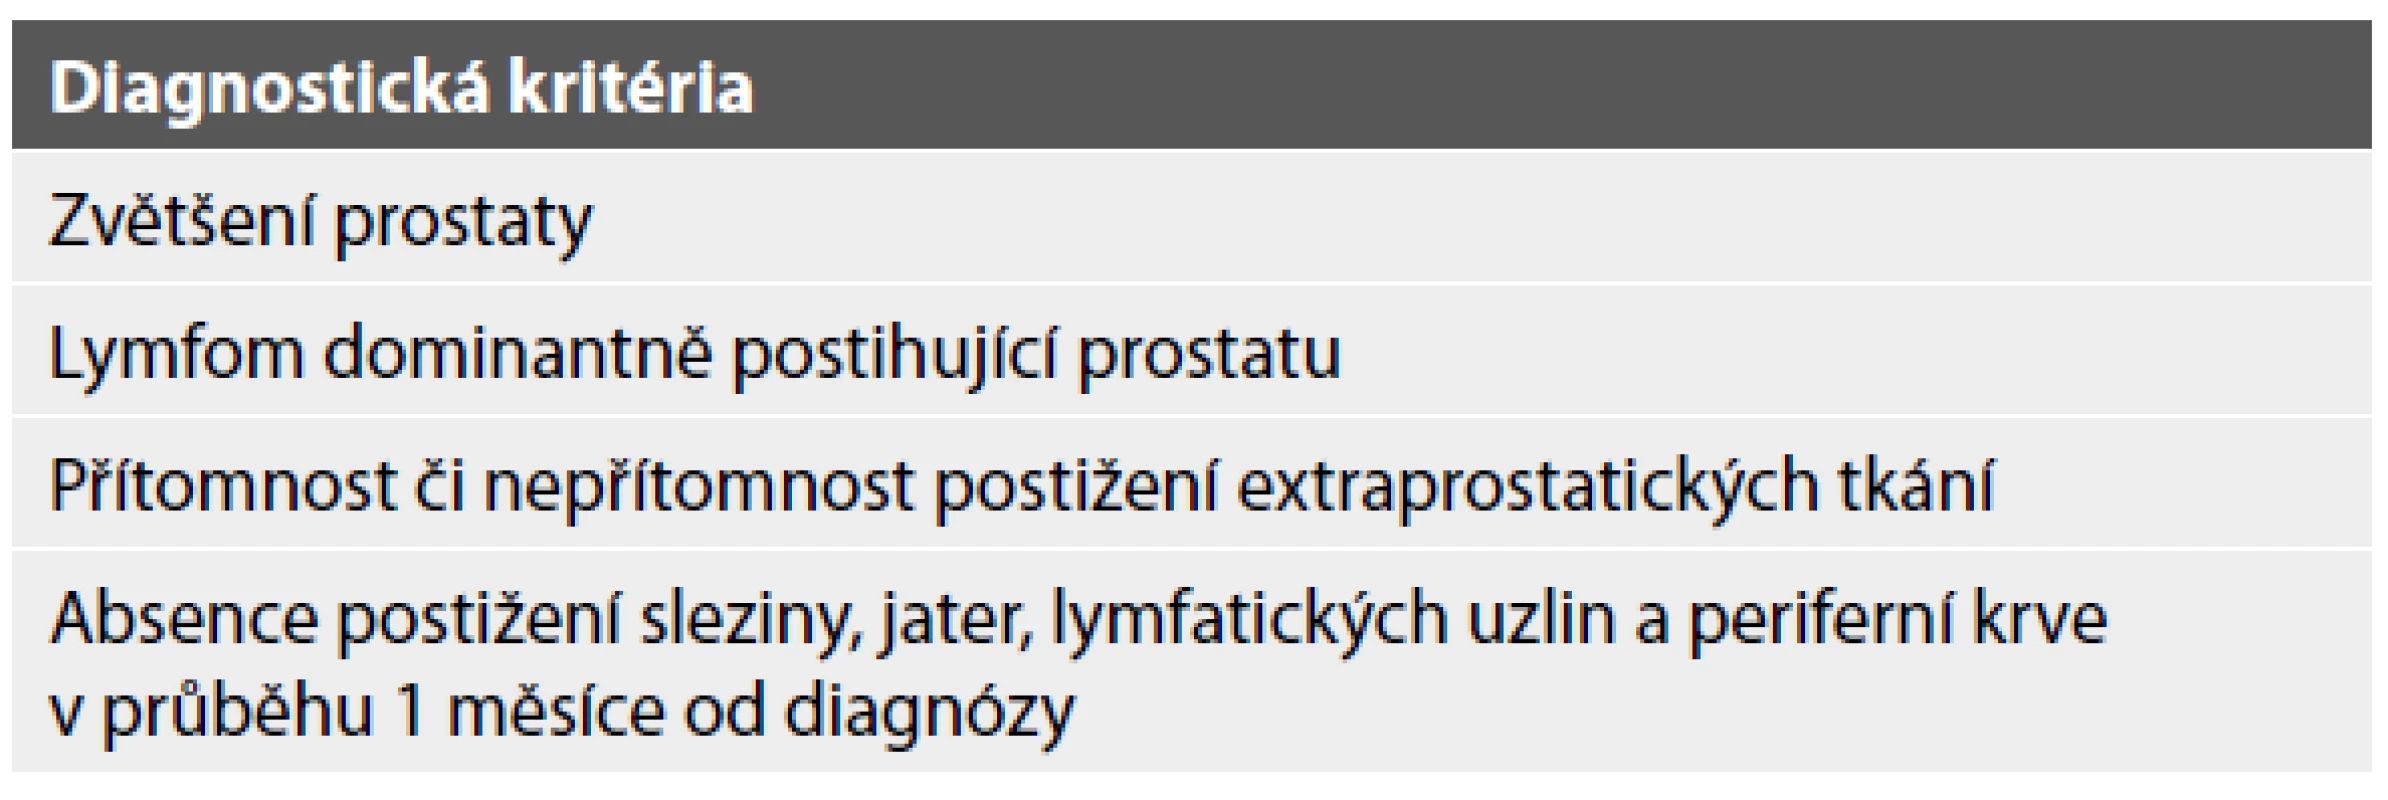 Diagnostická kritéria primárního lymfomu prostaty dle Bostwicka
(1,6,7).